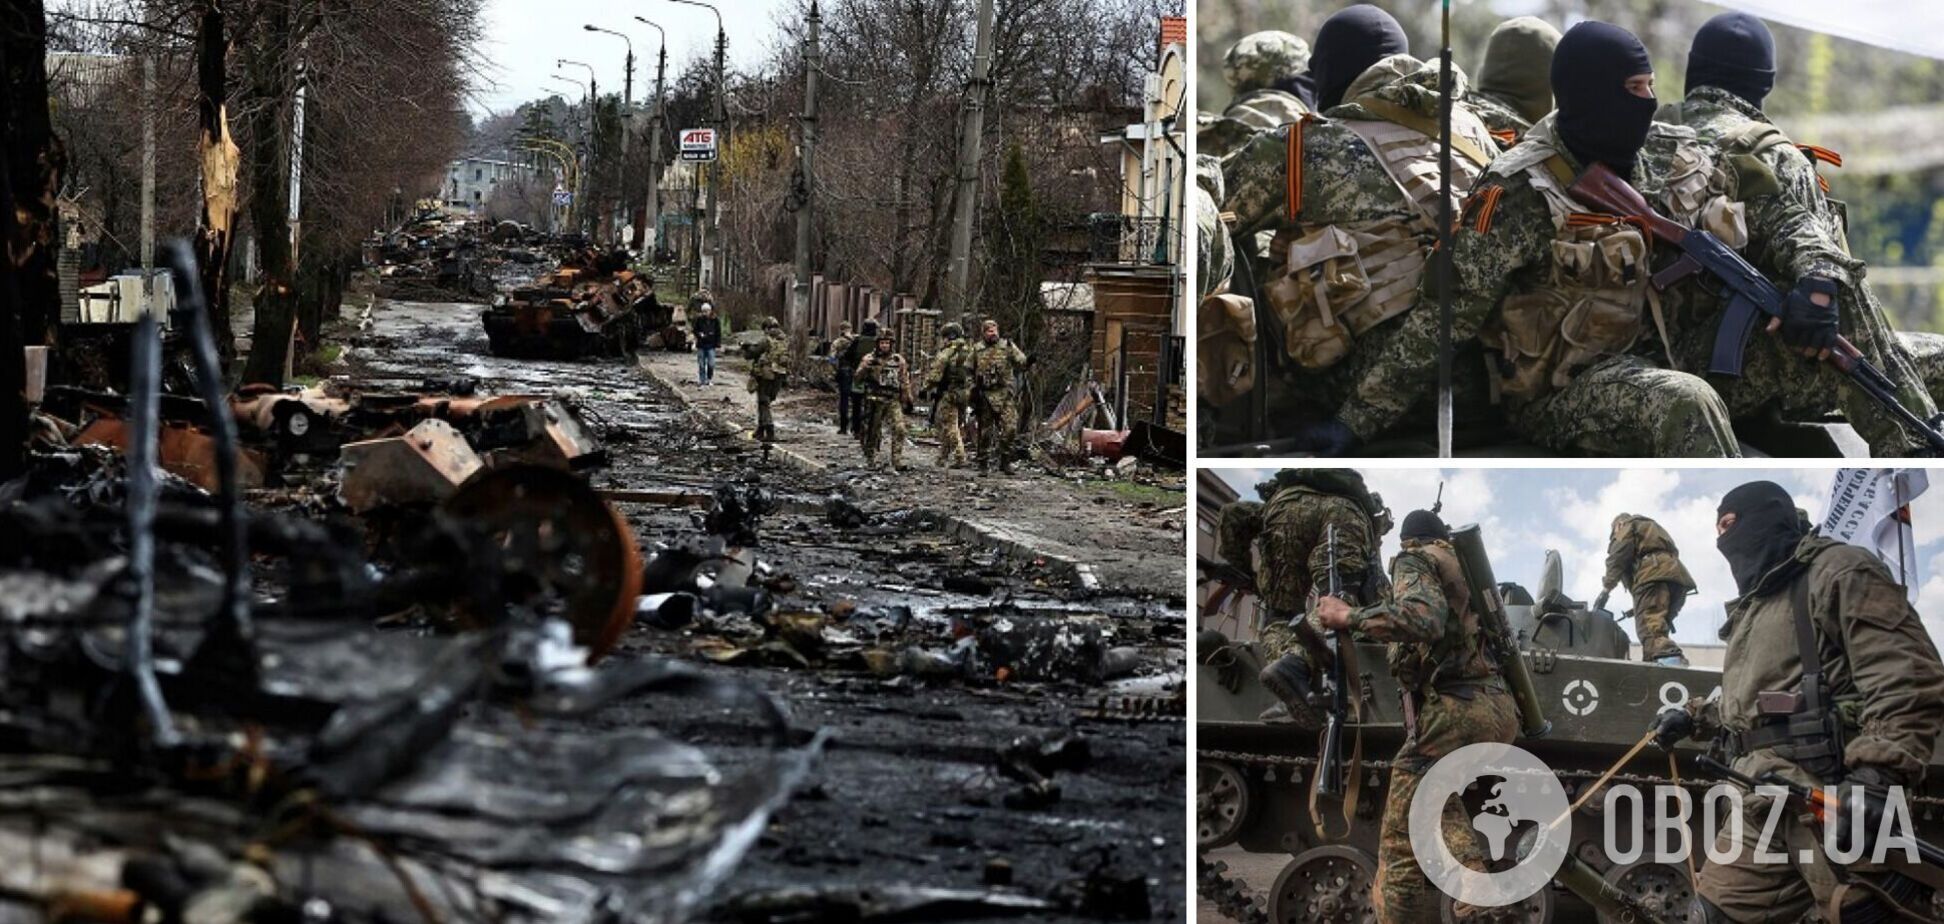 Российские оккупанты в форме ВСУ могут убить тысячи людей, чтобы 'затмить' огласку Бучанской резни – СМИ